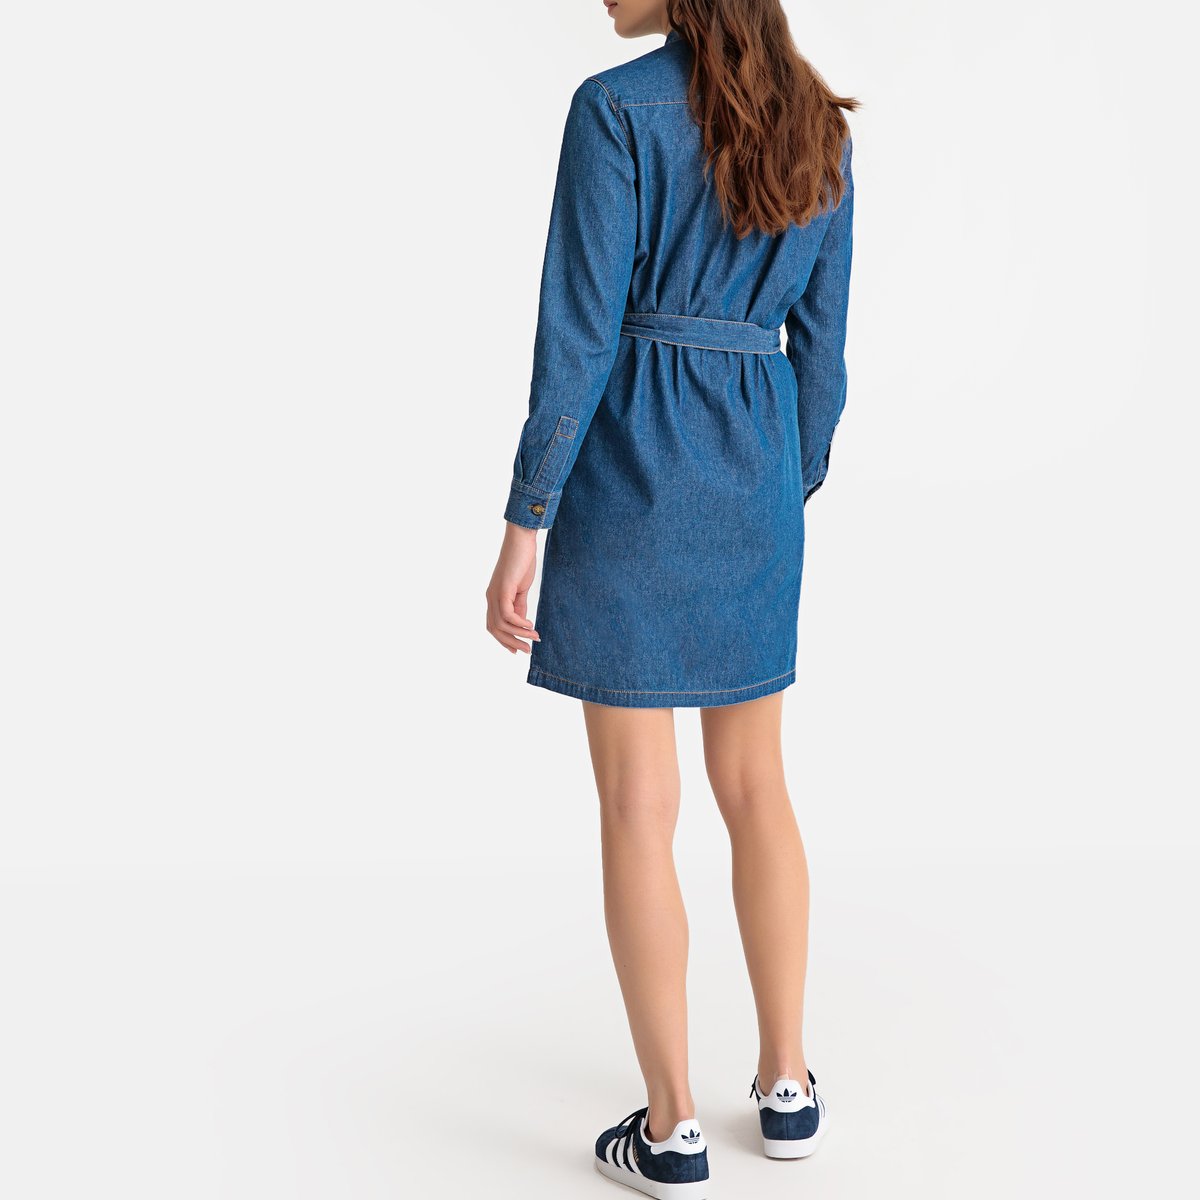 Платье-рубашка La Redoute Из денима с длинными рукавами 40 (FR) - 46 (RUS) синий, размер 40 (FR) - 46 (RUS) Из денима с длинными рукавами 40 (FR) - 46 (RUS) синий - фото 4